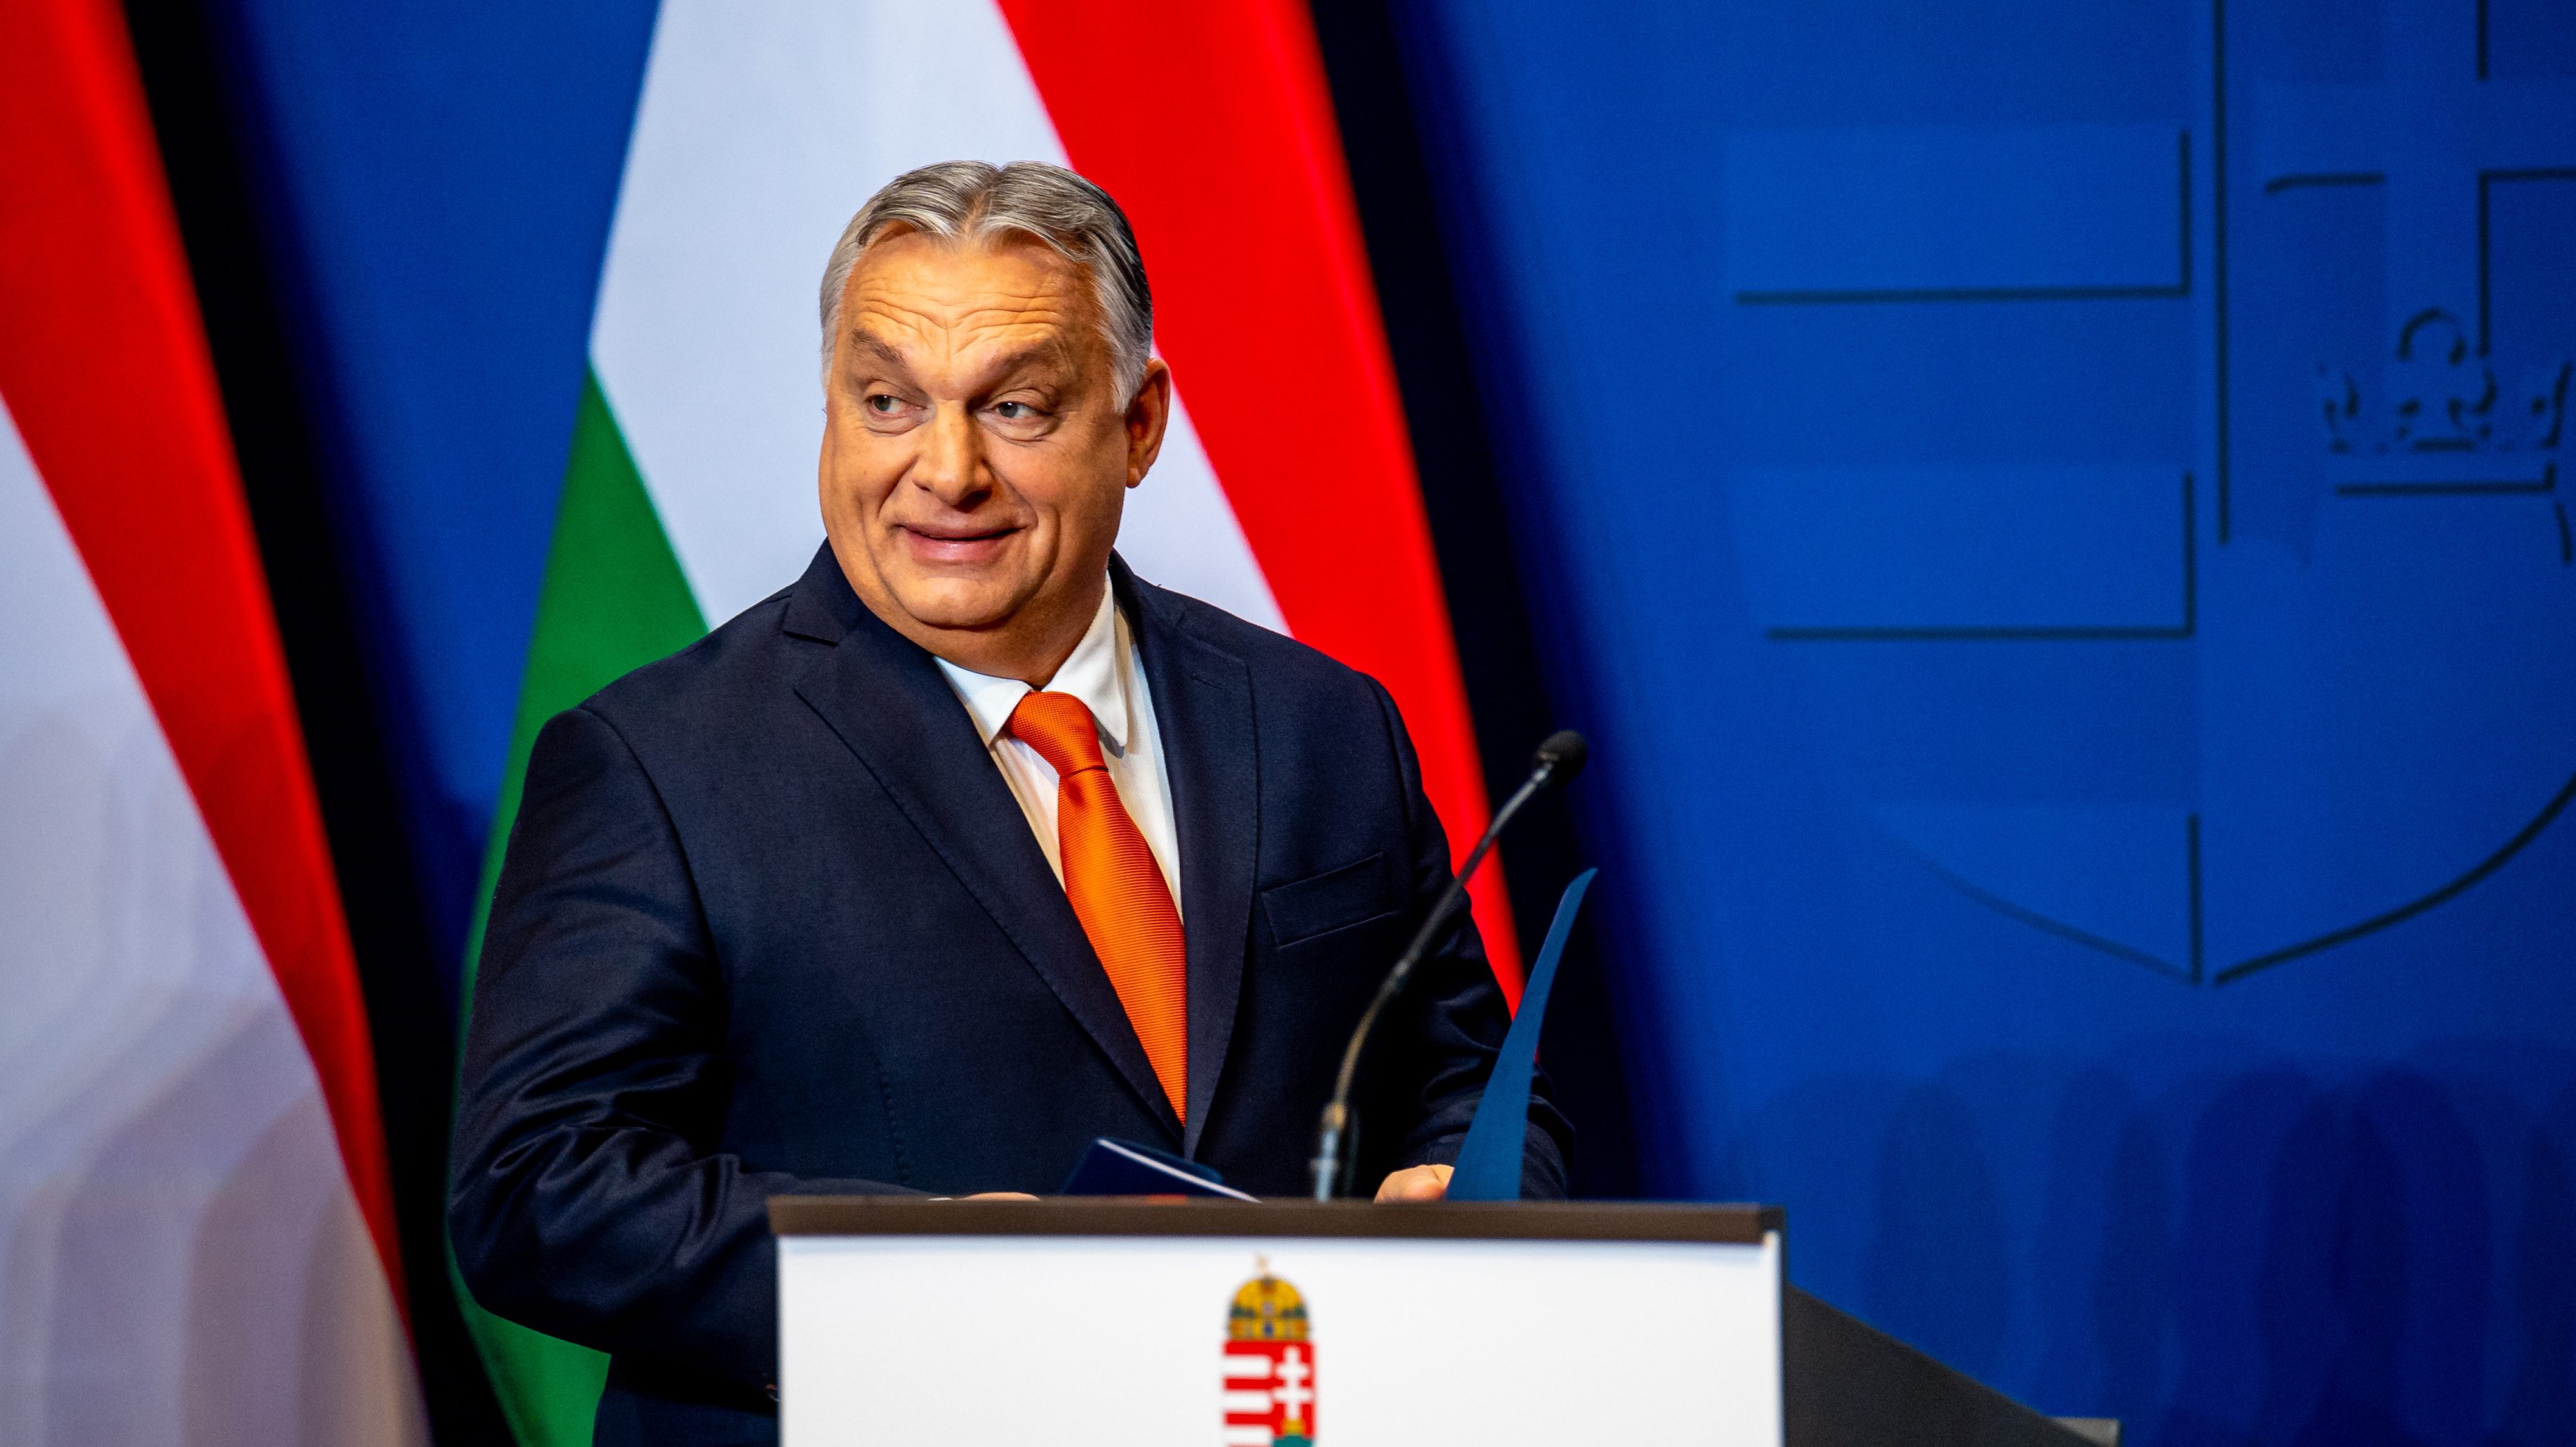 Medián: 5 százalékpont a Fidesz előnye a teljes népességben